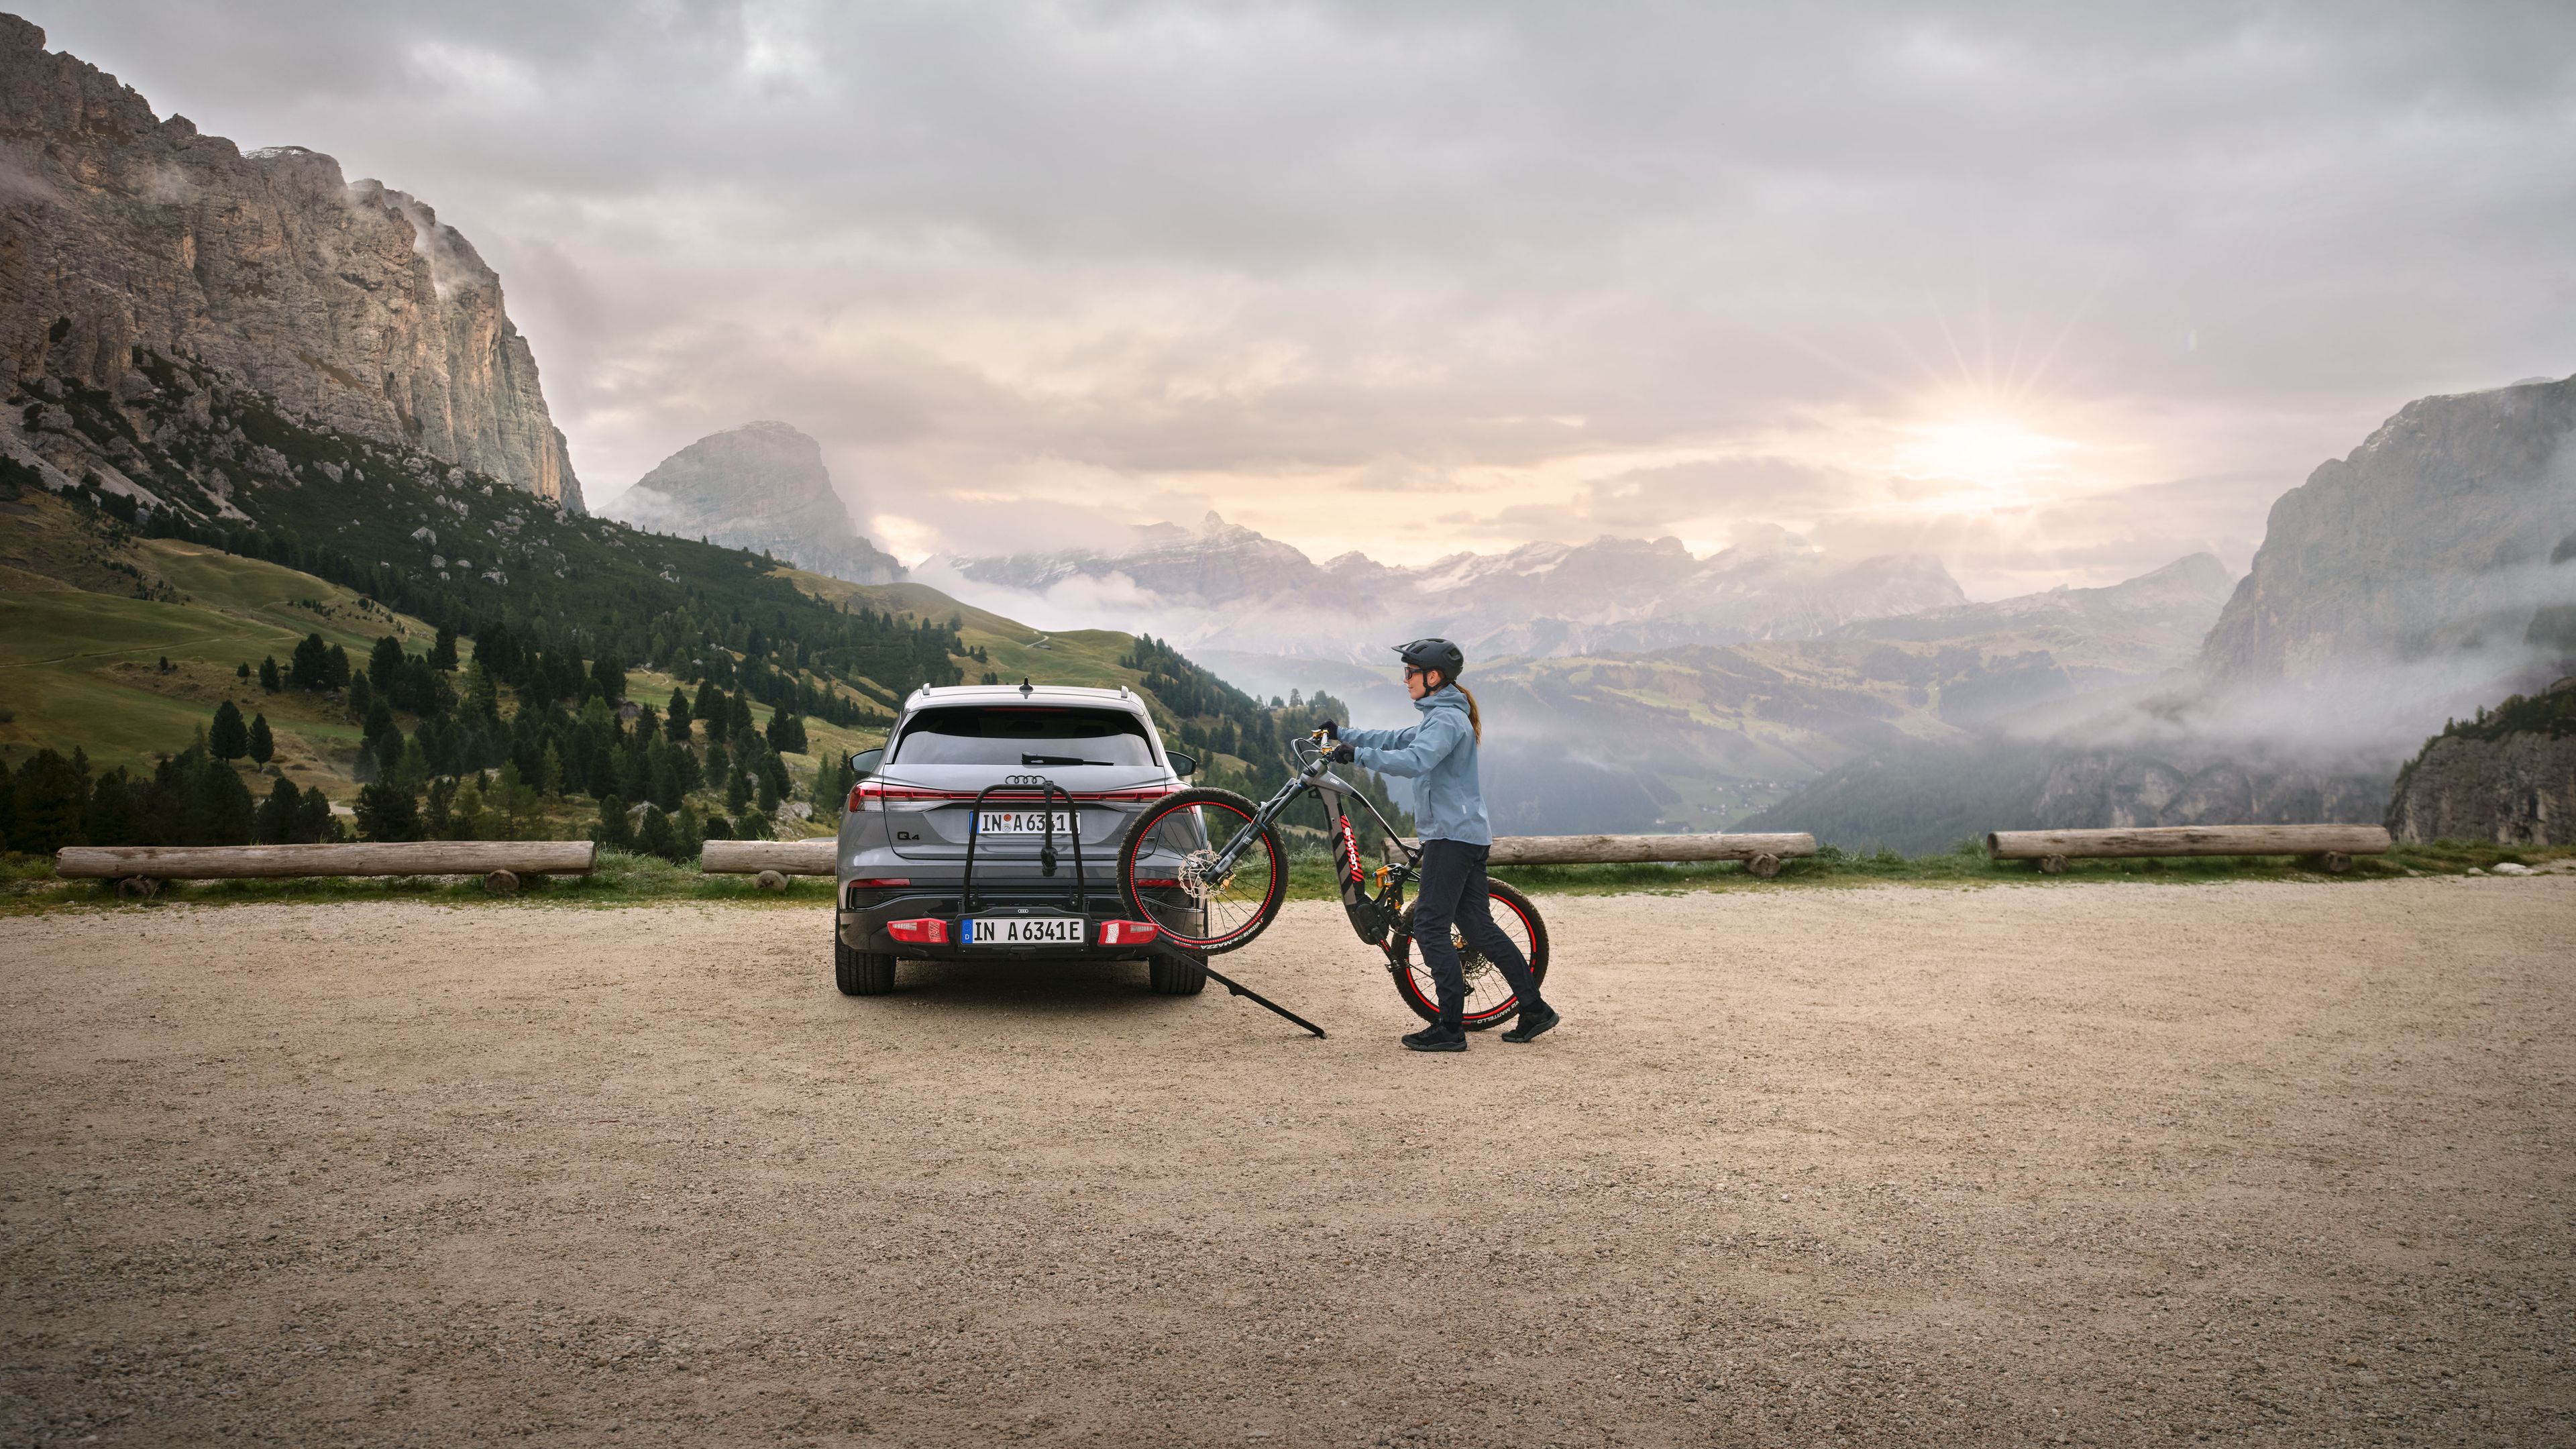 Eine Frau lädt Audi electric mountain bike auf einen Audi